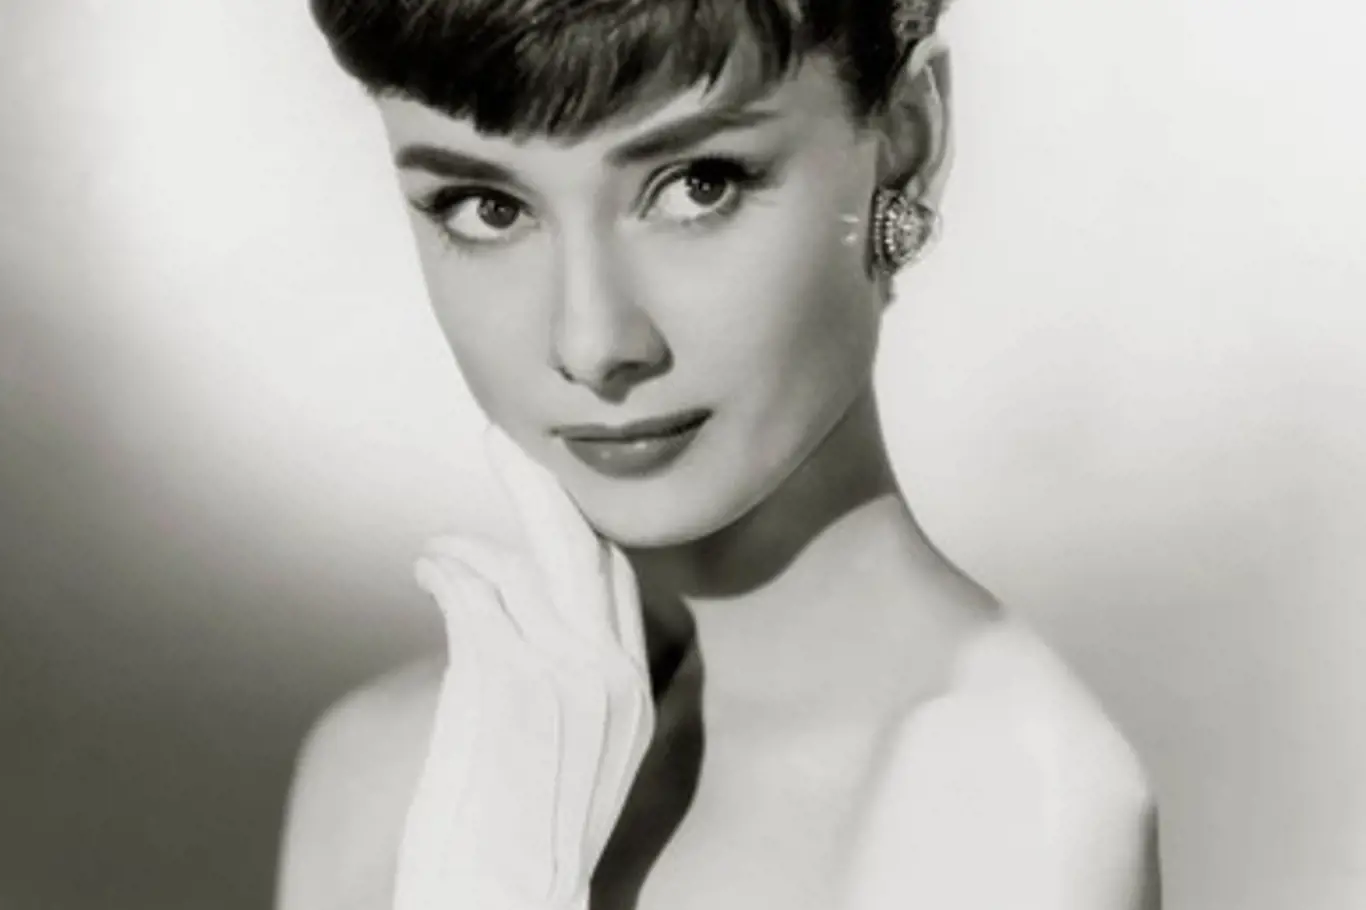 Nezapomenutelná herecká a módní ikona Audrey Hepburn trpěla komplexy